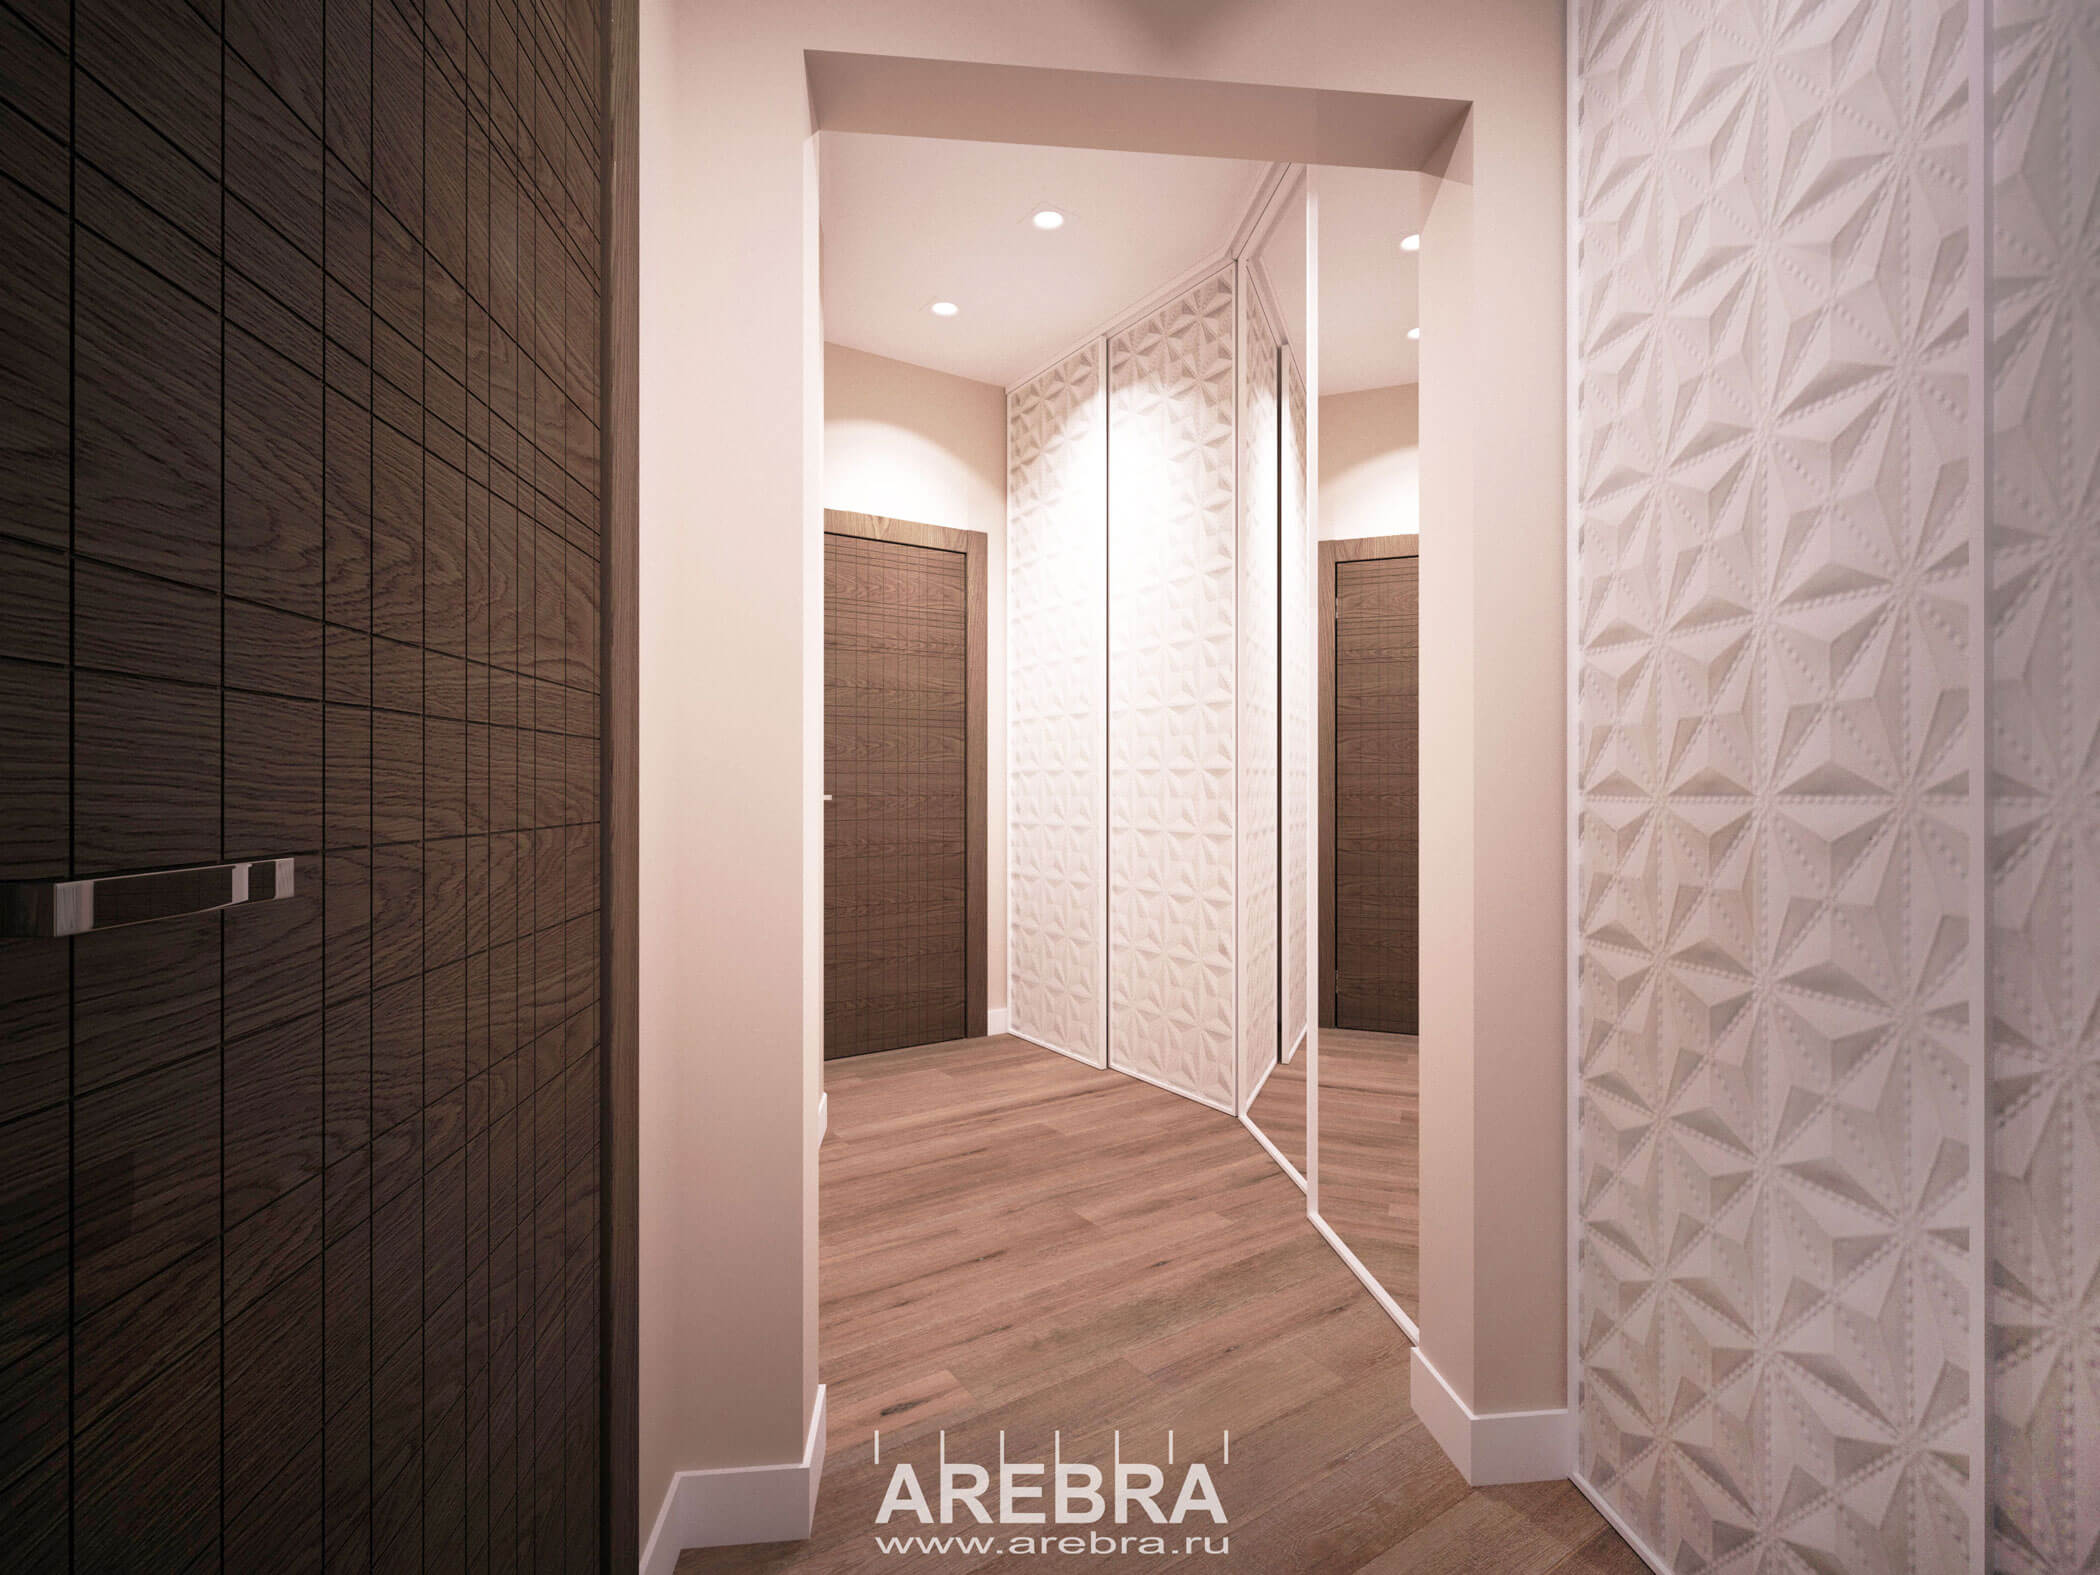 Дизайн проект интерьера квартиры общей площадью 74,2м2 в г. Санкт-Петербург, пр. Славы 52, корп.1